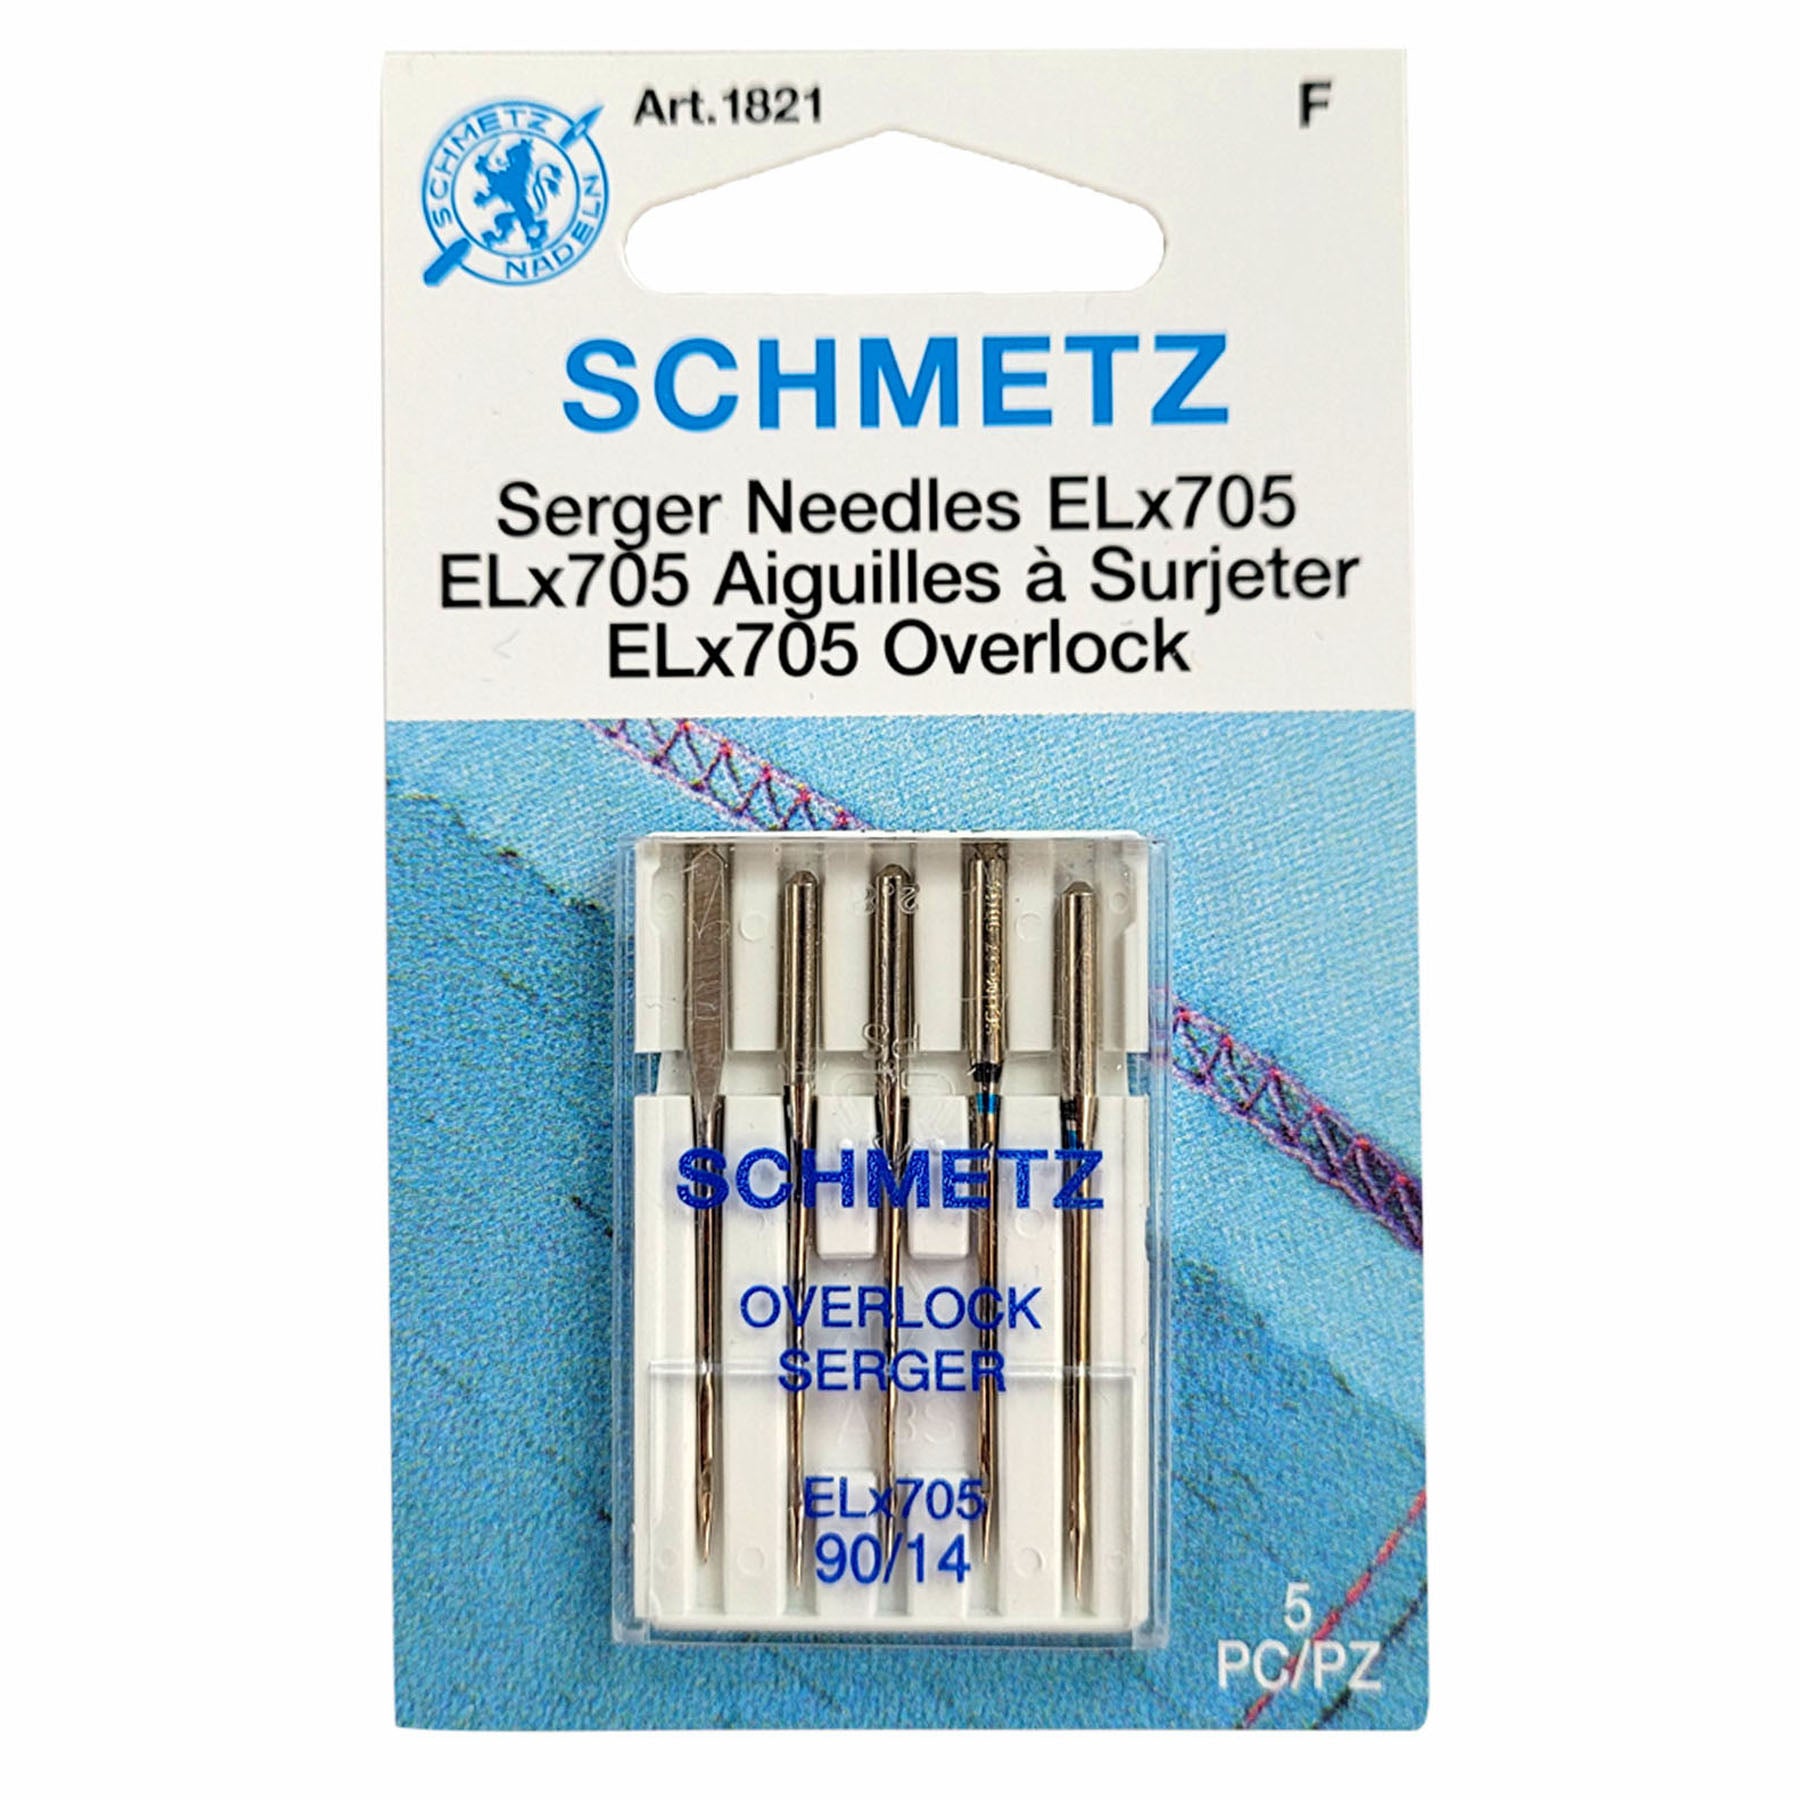 Needles, Serger ELx705 - Floriani Chrome by Schmetz 5ct